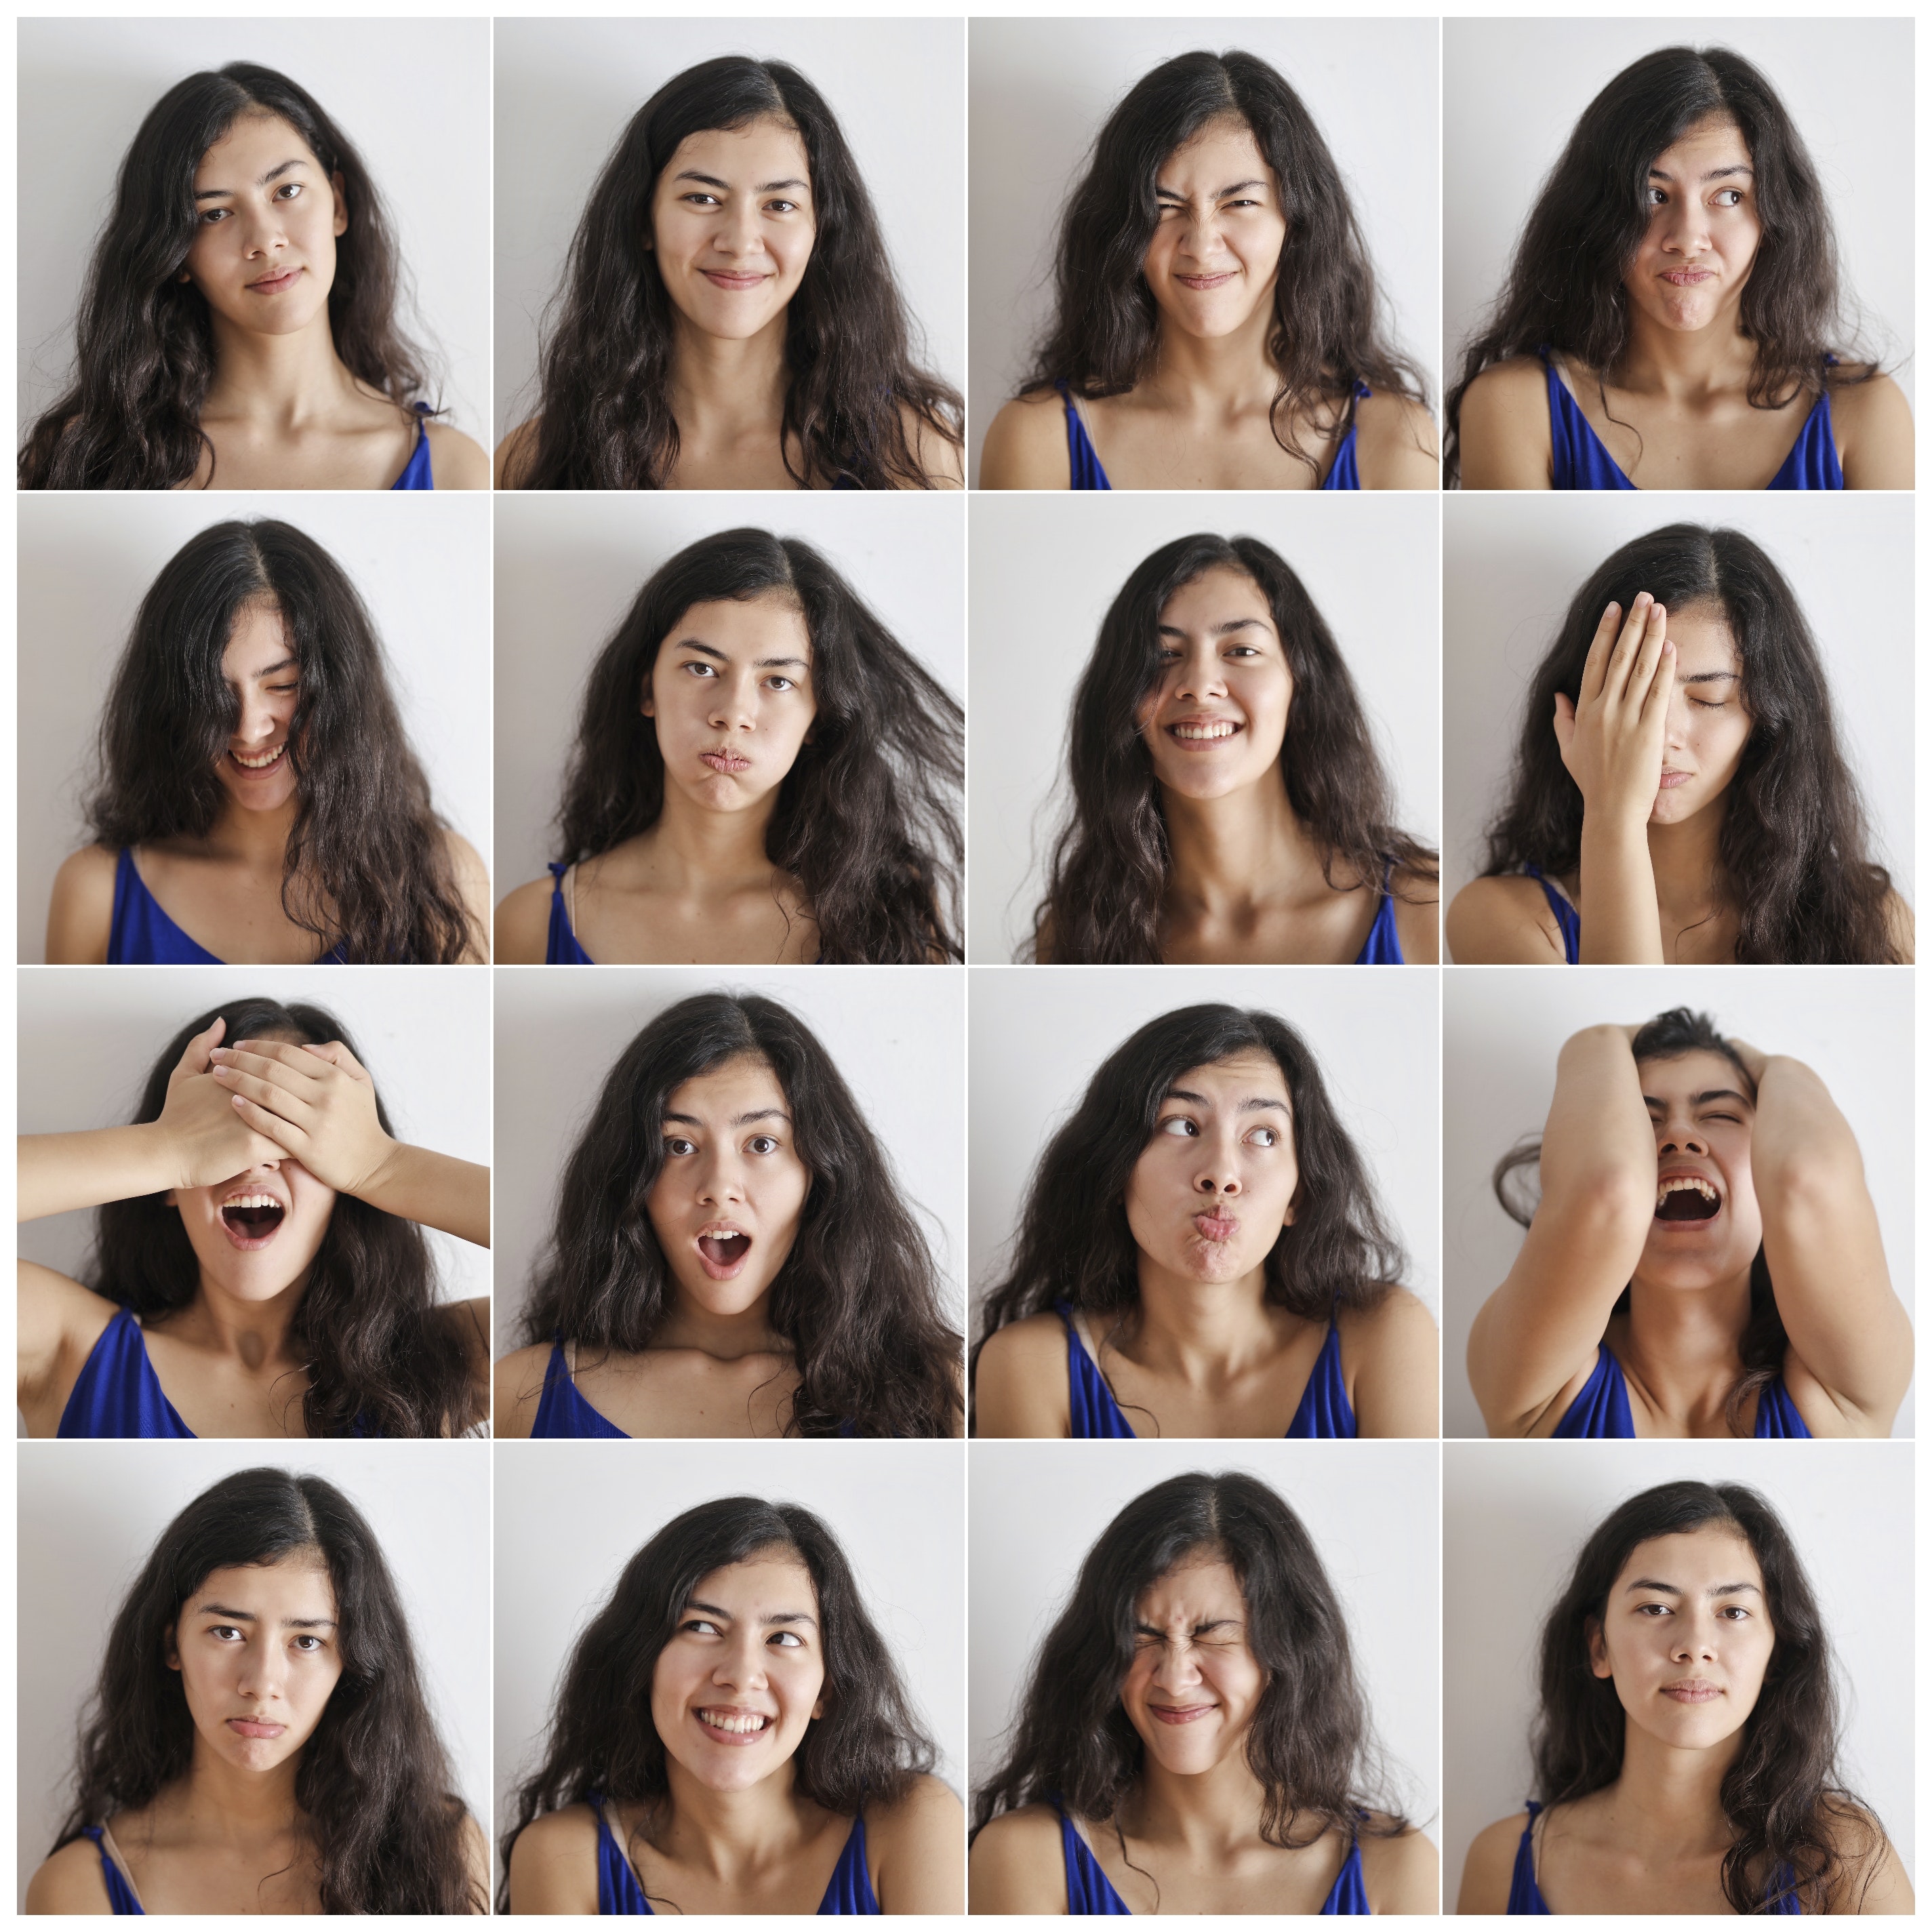 विभिन्न प्रकार की भावनाओं को व्यक्त करने वाली एक युवती के 16 चित्रों का एक कोलाज।